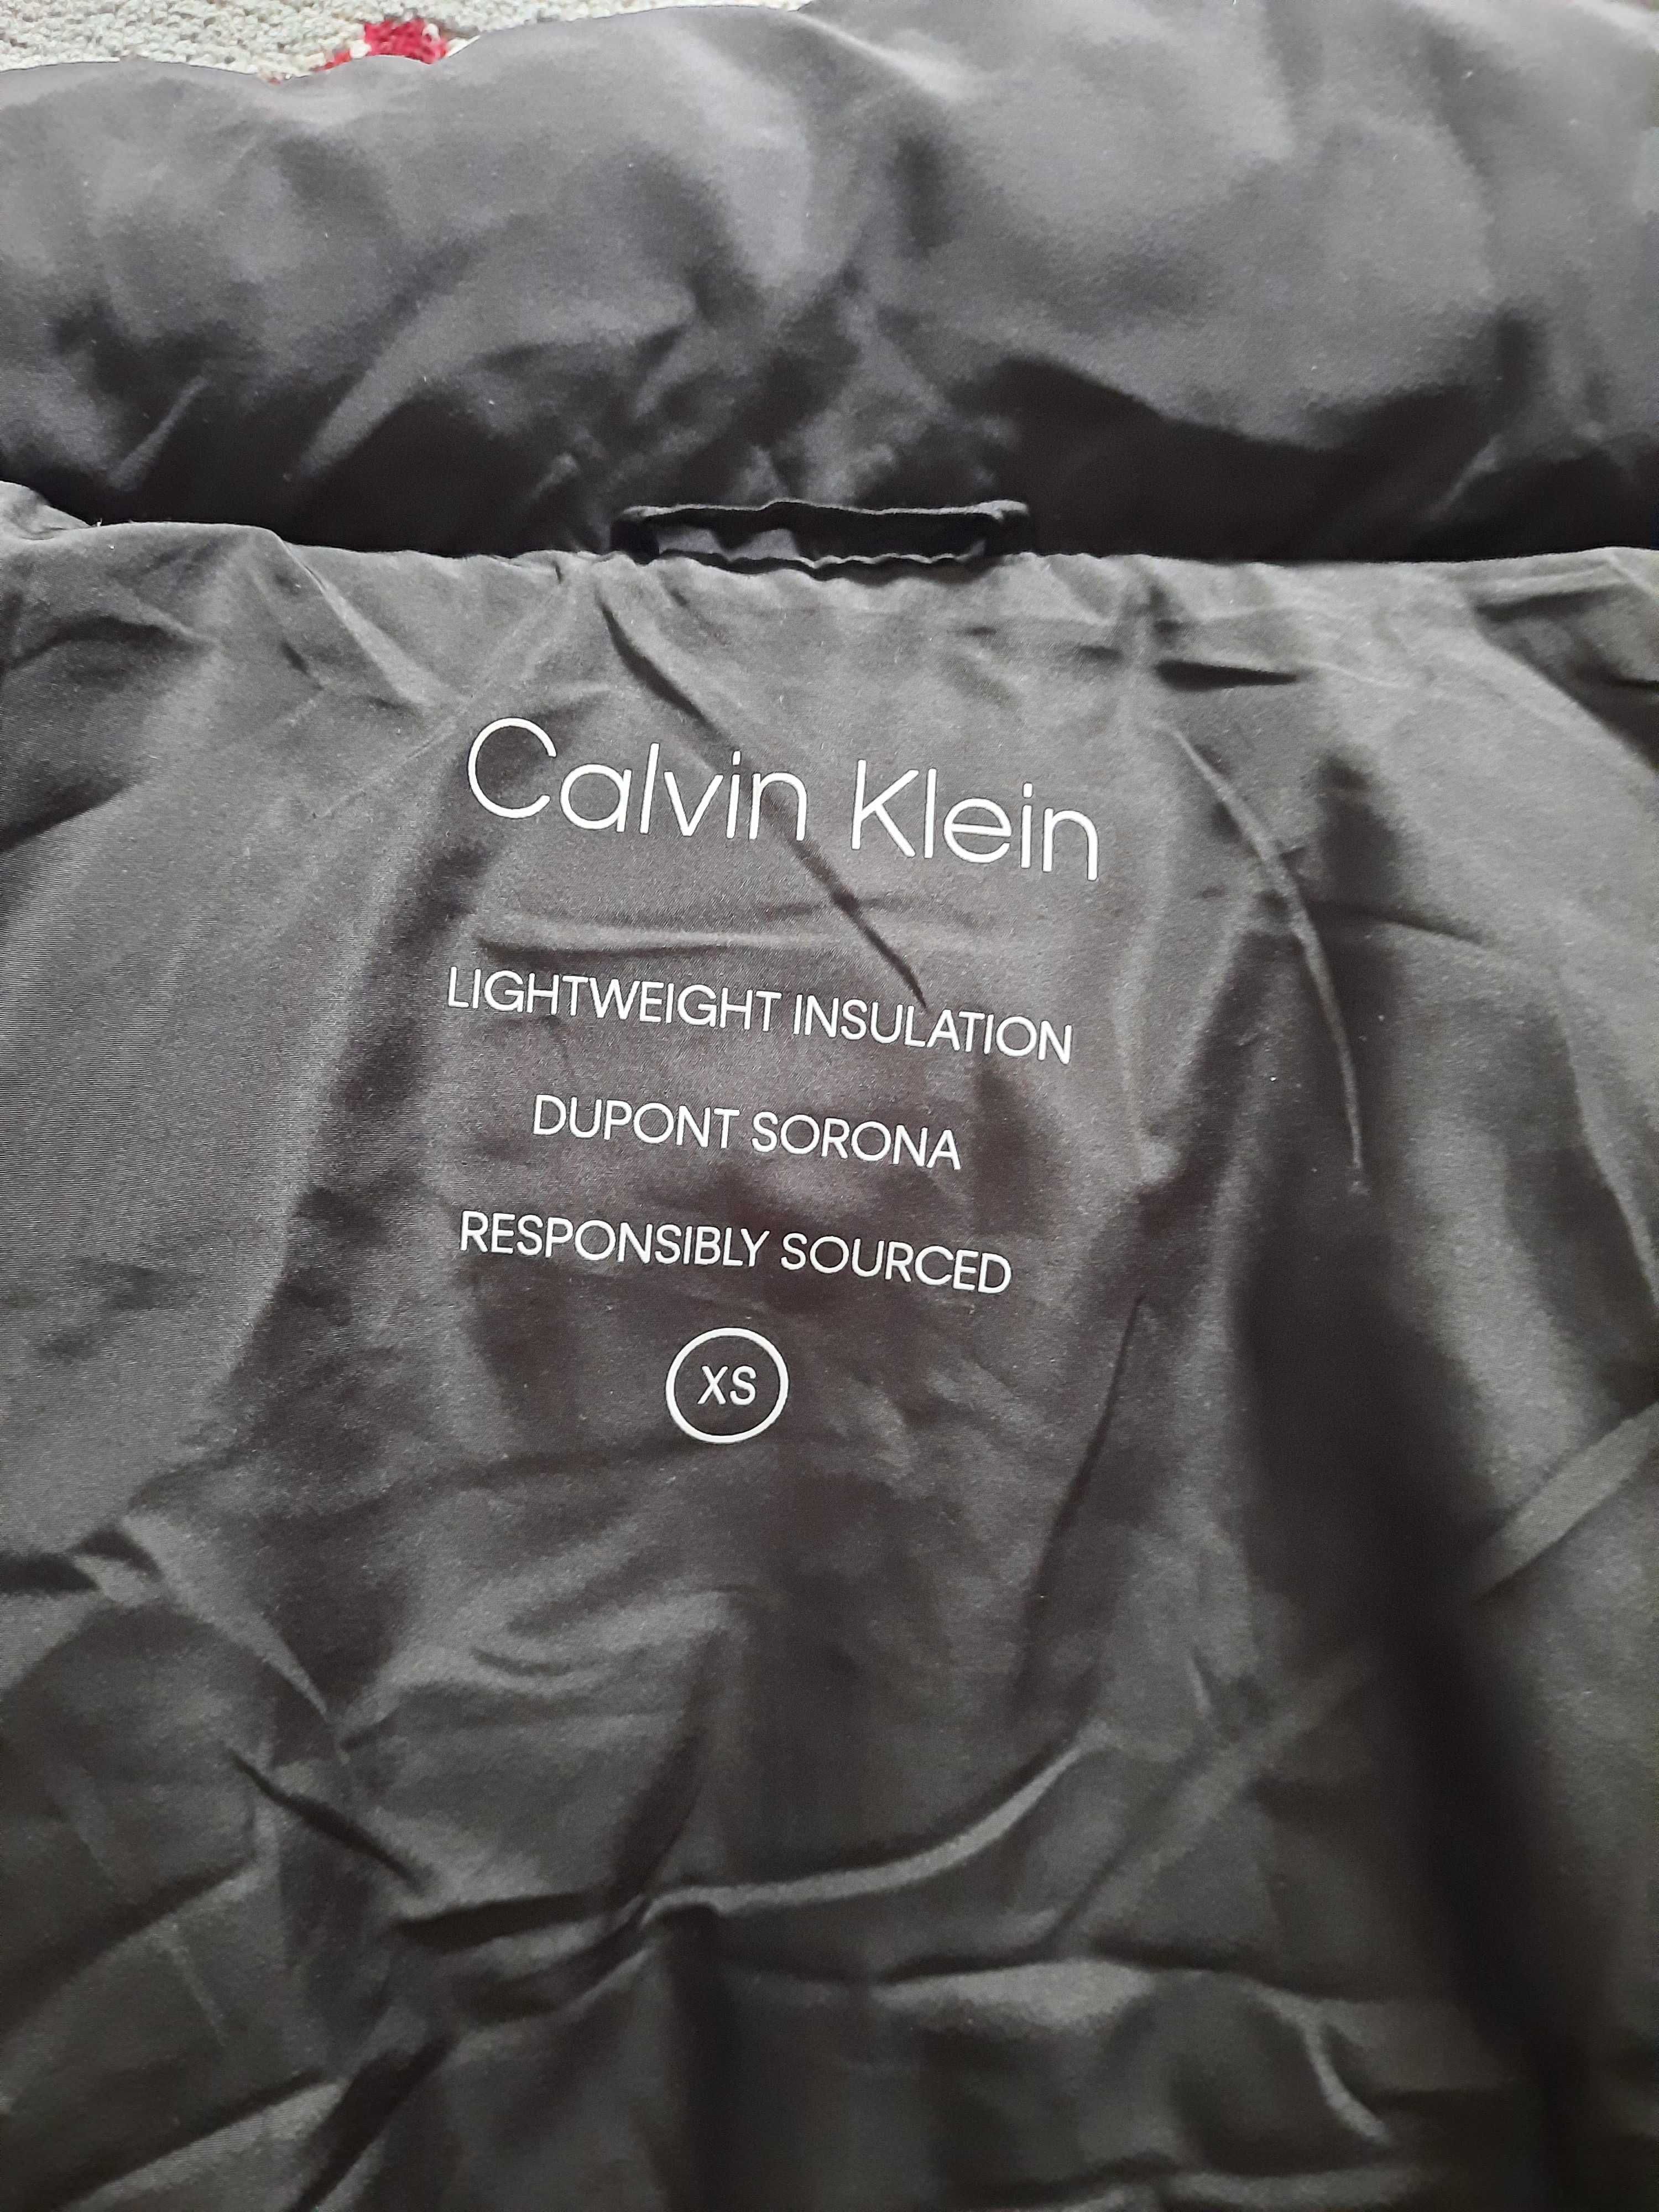 Vand geaca Calvin Klein,model ,Dupont Sorona, cu eticheta.